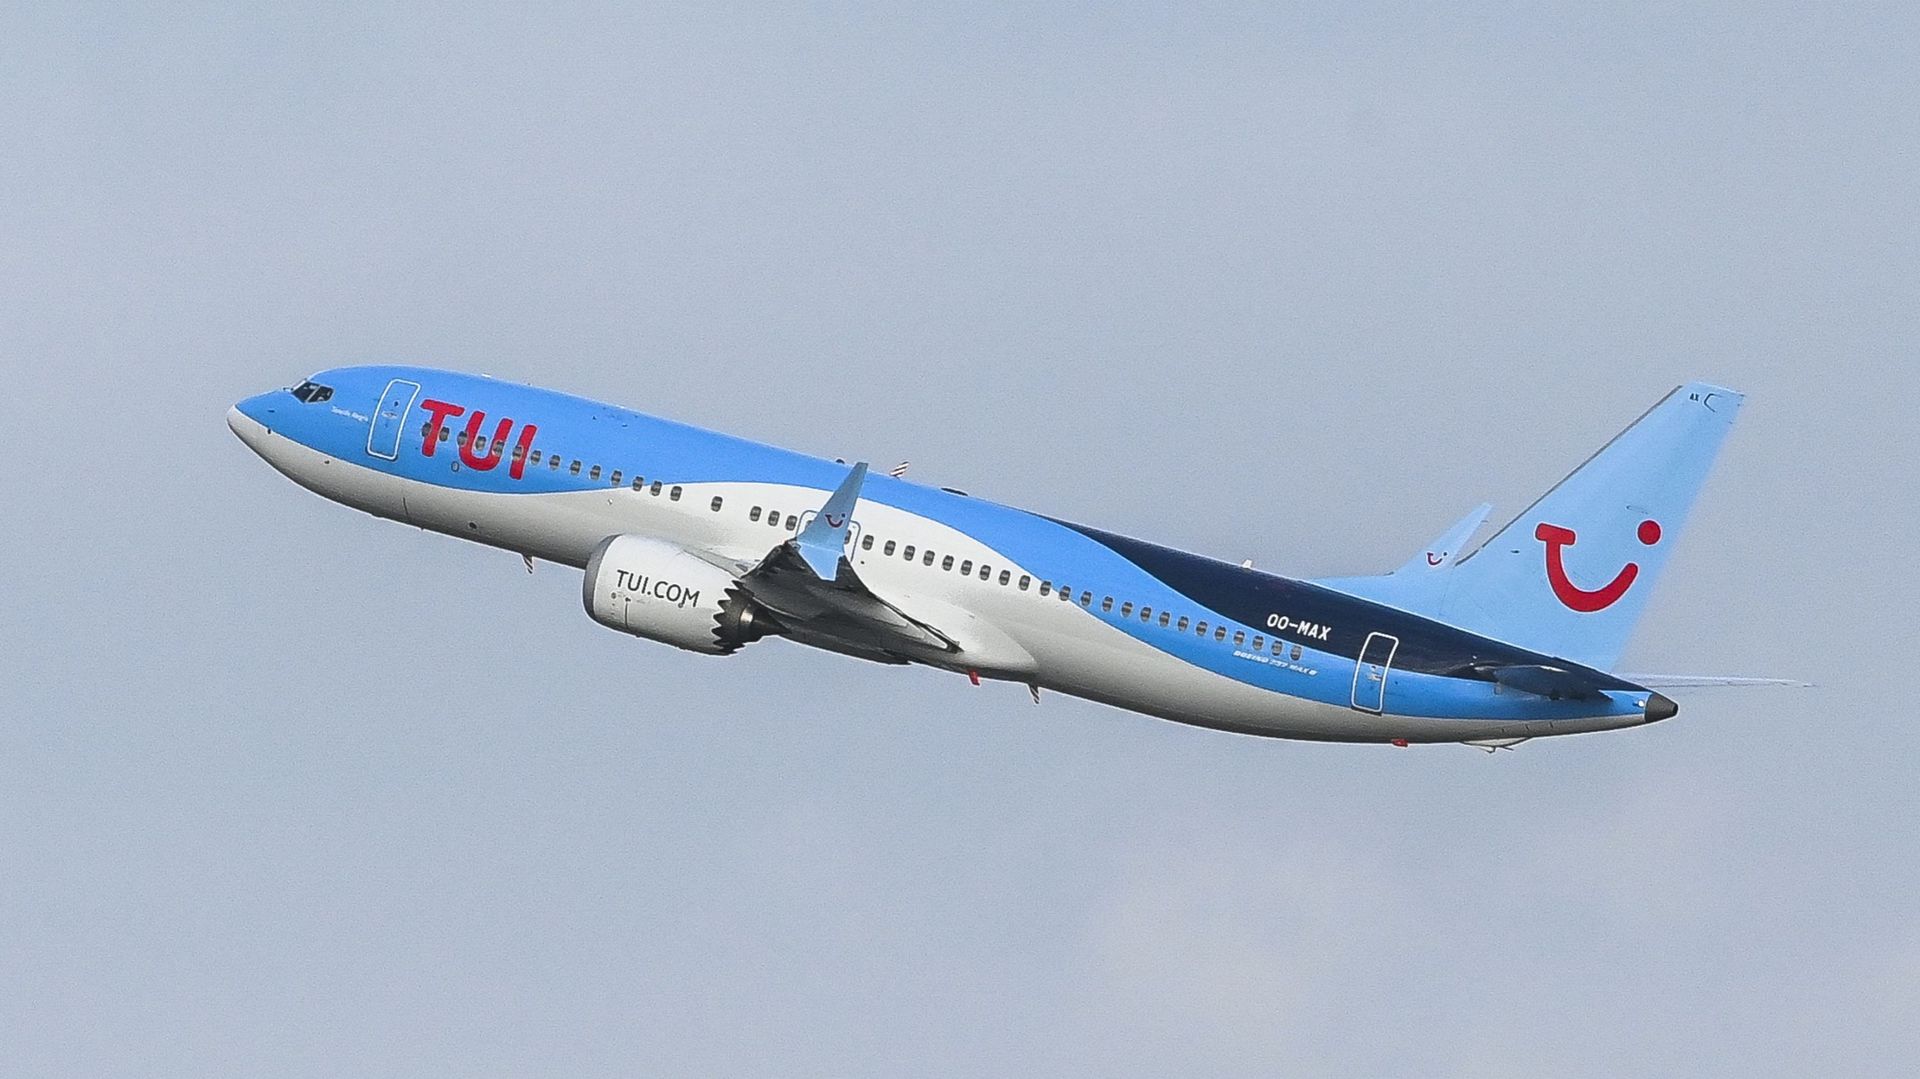 "Nous avons toute confiance dans le Boeing 737 MAX", déclare Gunther Hofman, directeur général de Tui fly Belgium